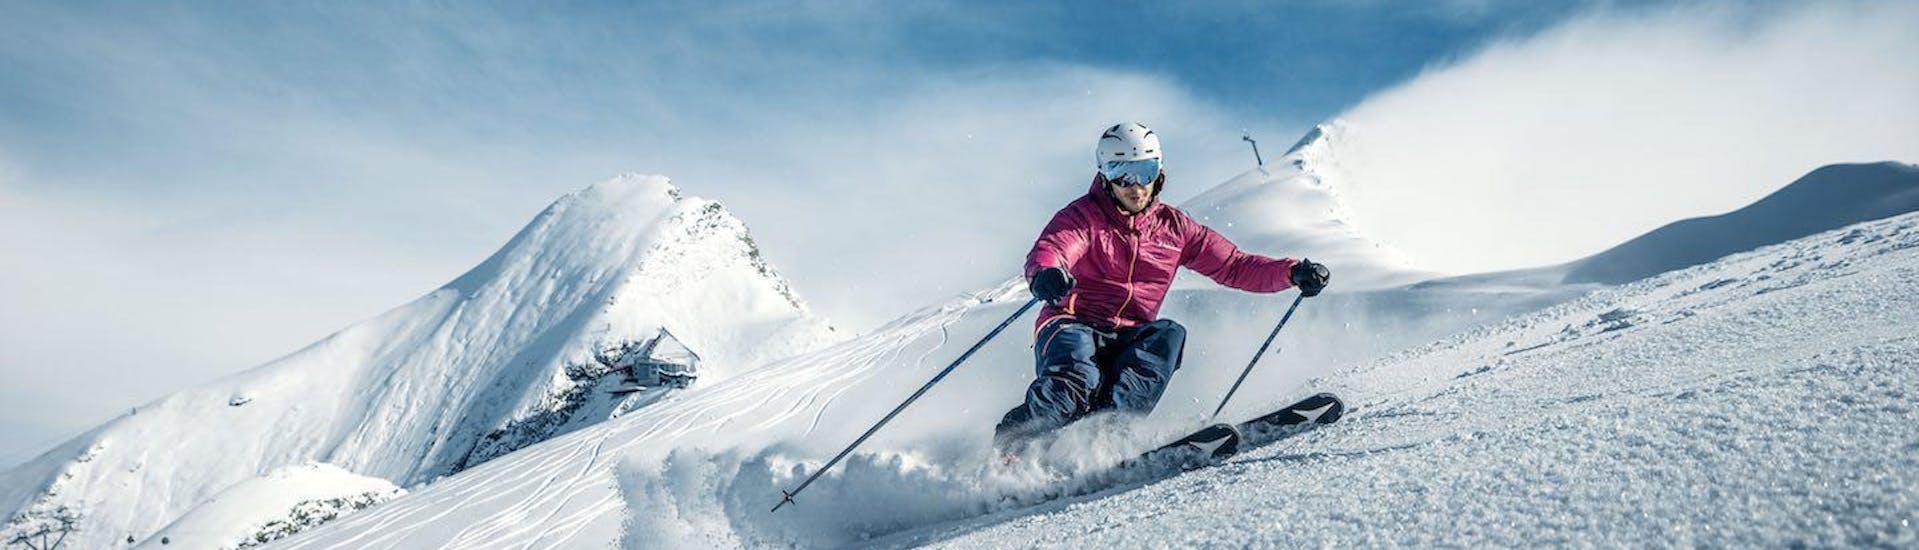 Skilessen voor volwassenen voor gevorderden.